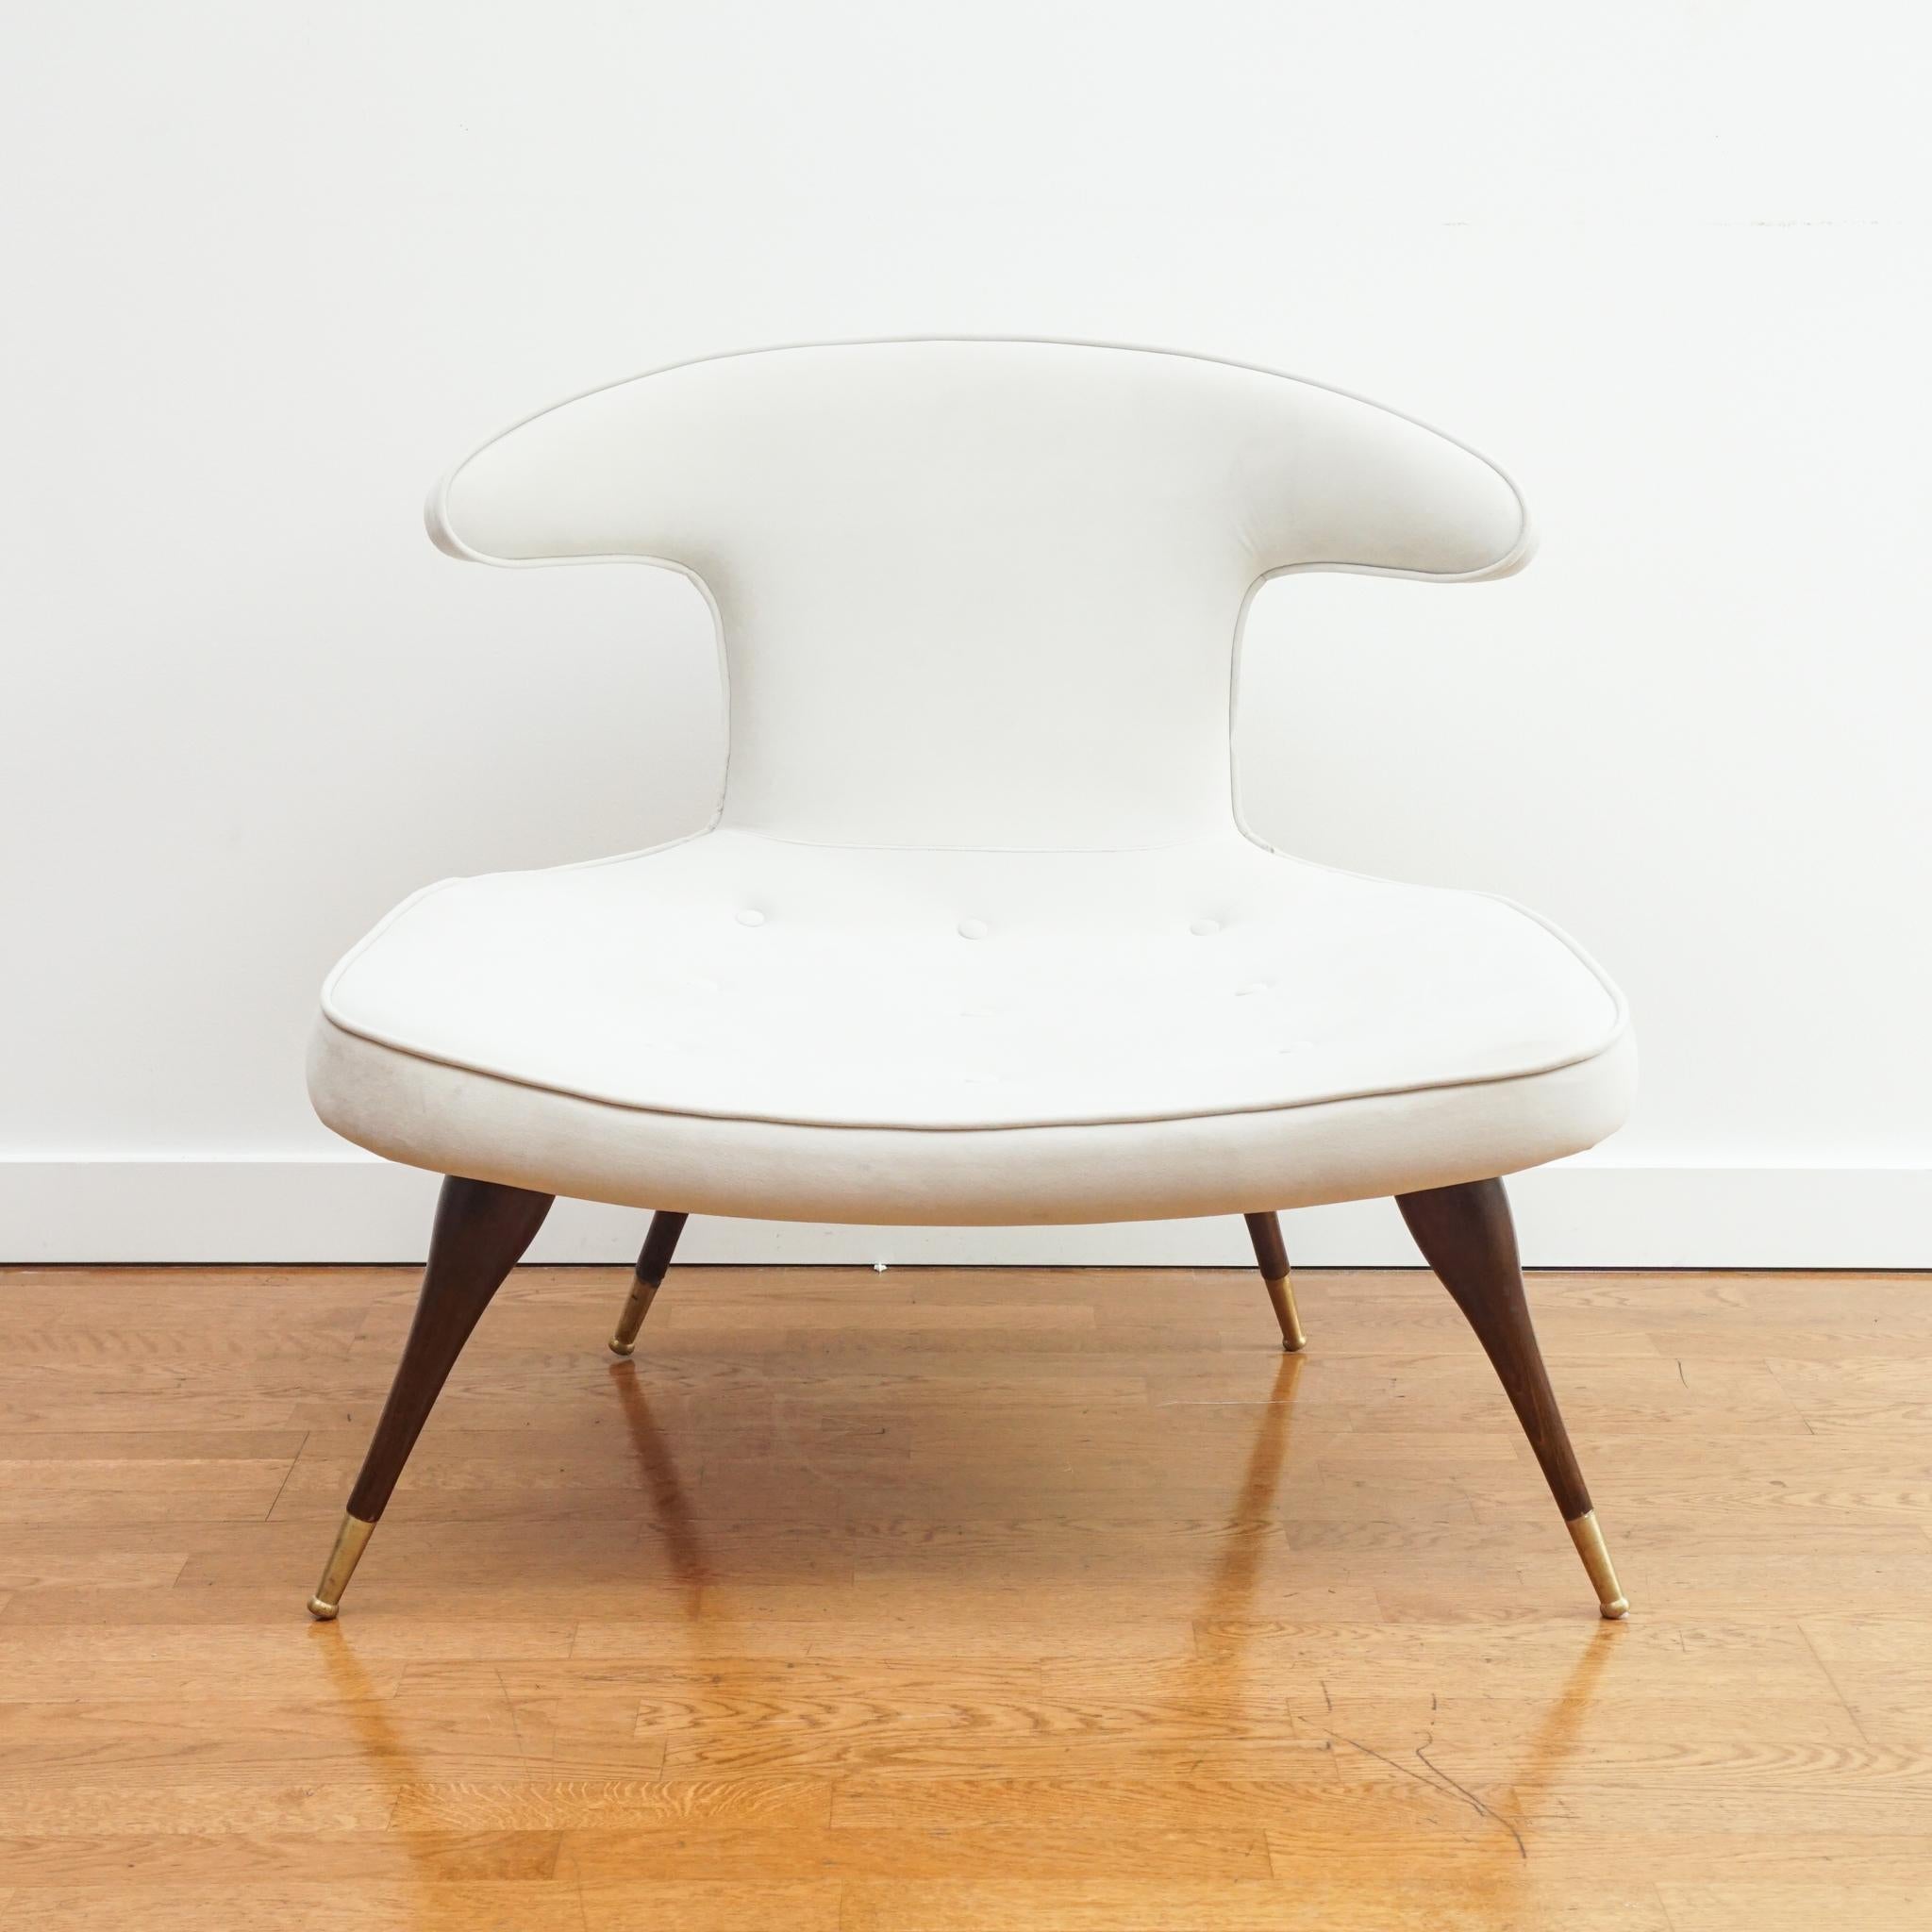 Le design distinctif de cette chaise longue rembourrée rappelle le style et la qualité associés aux meubles de Karpen of California.  Dotée d'une assise généreuse, la chaise possède des pieds coniques en angle et un dossier de style klismos avec des